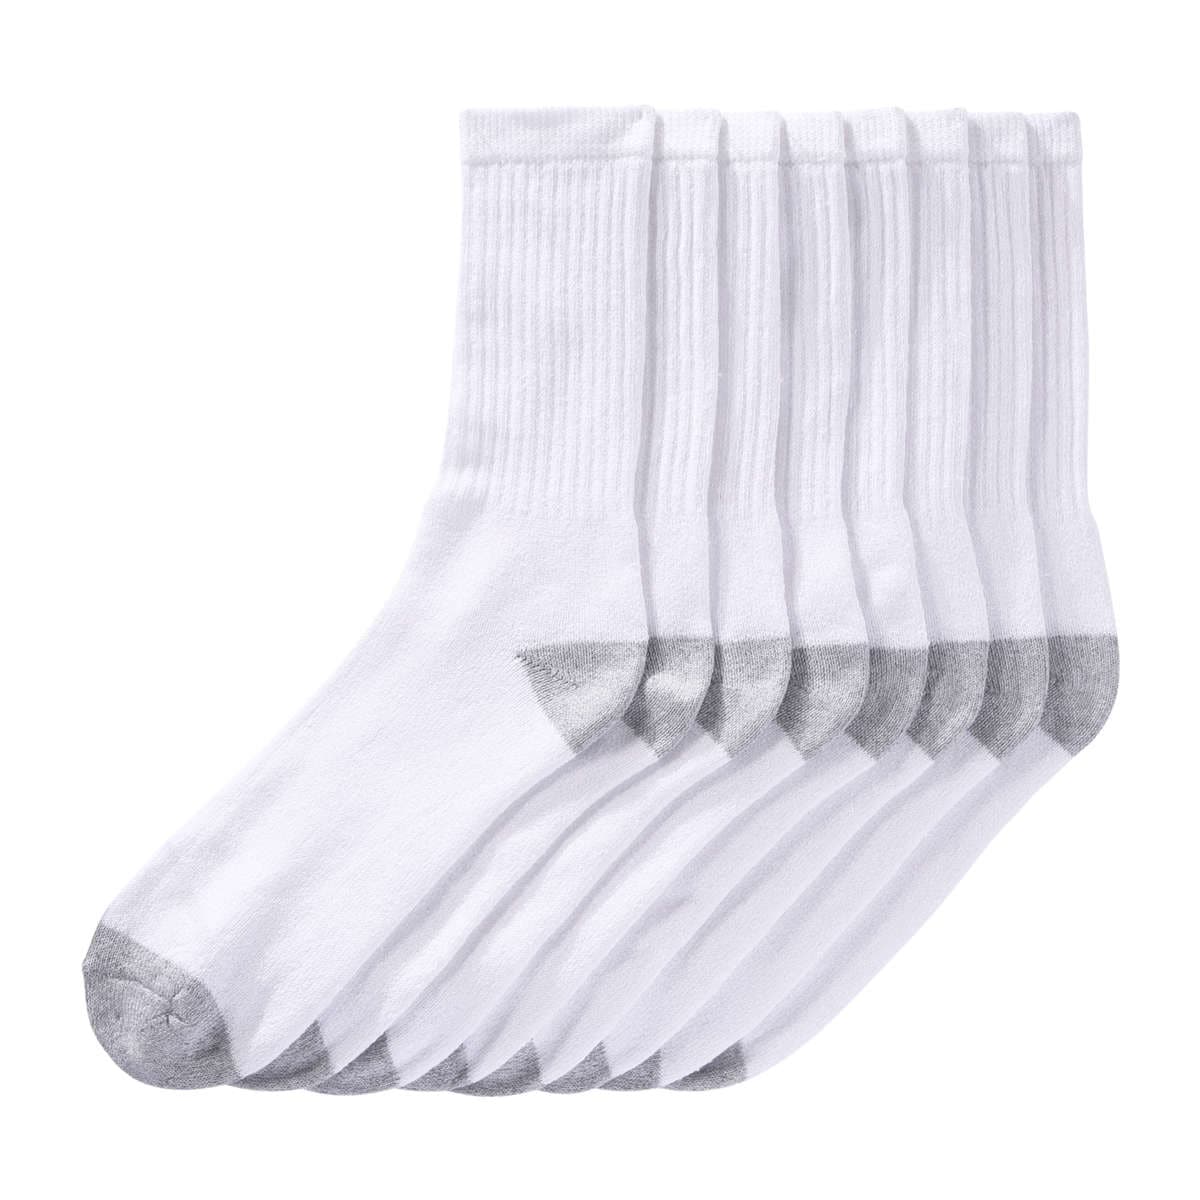 Men's 8 Pack Crew Socks in White from Joe Fresh